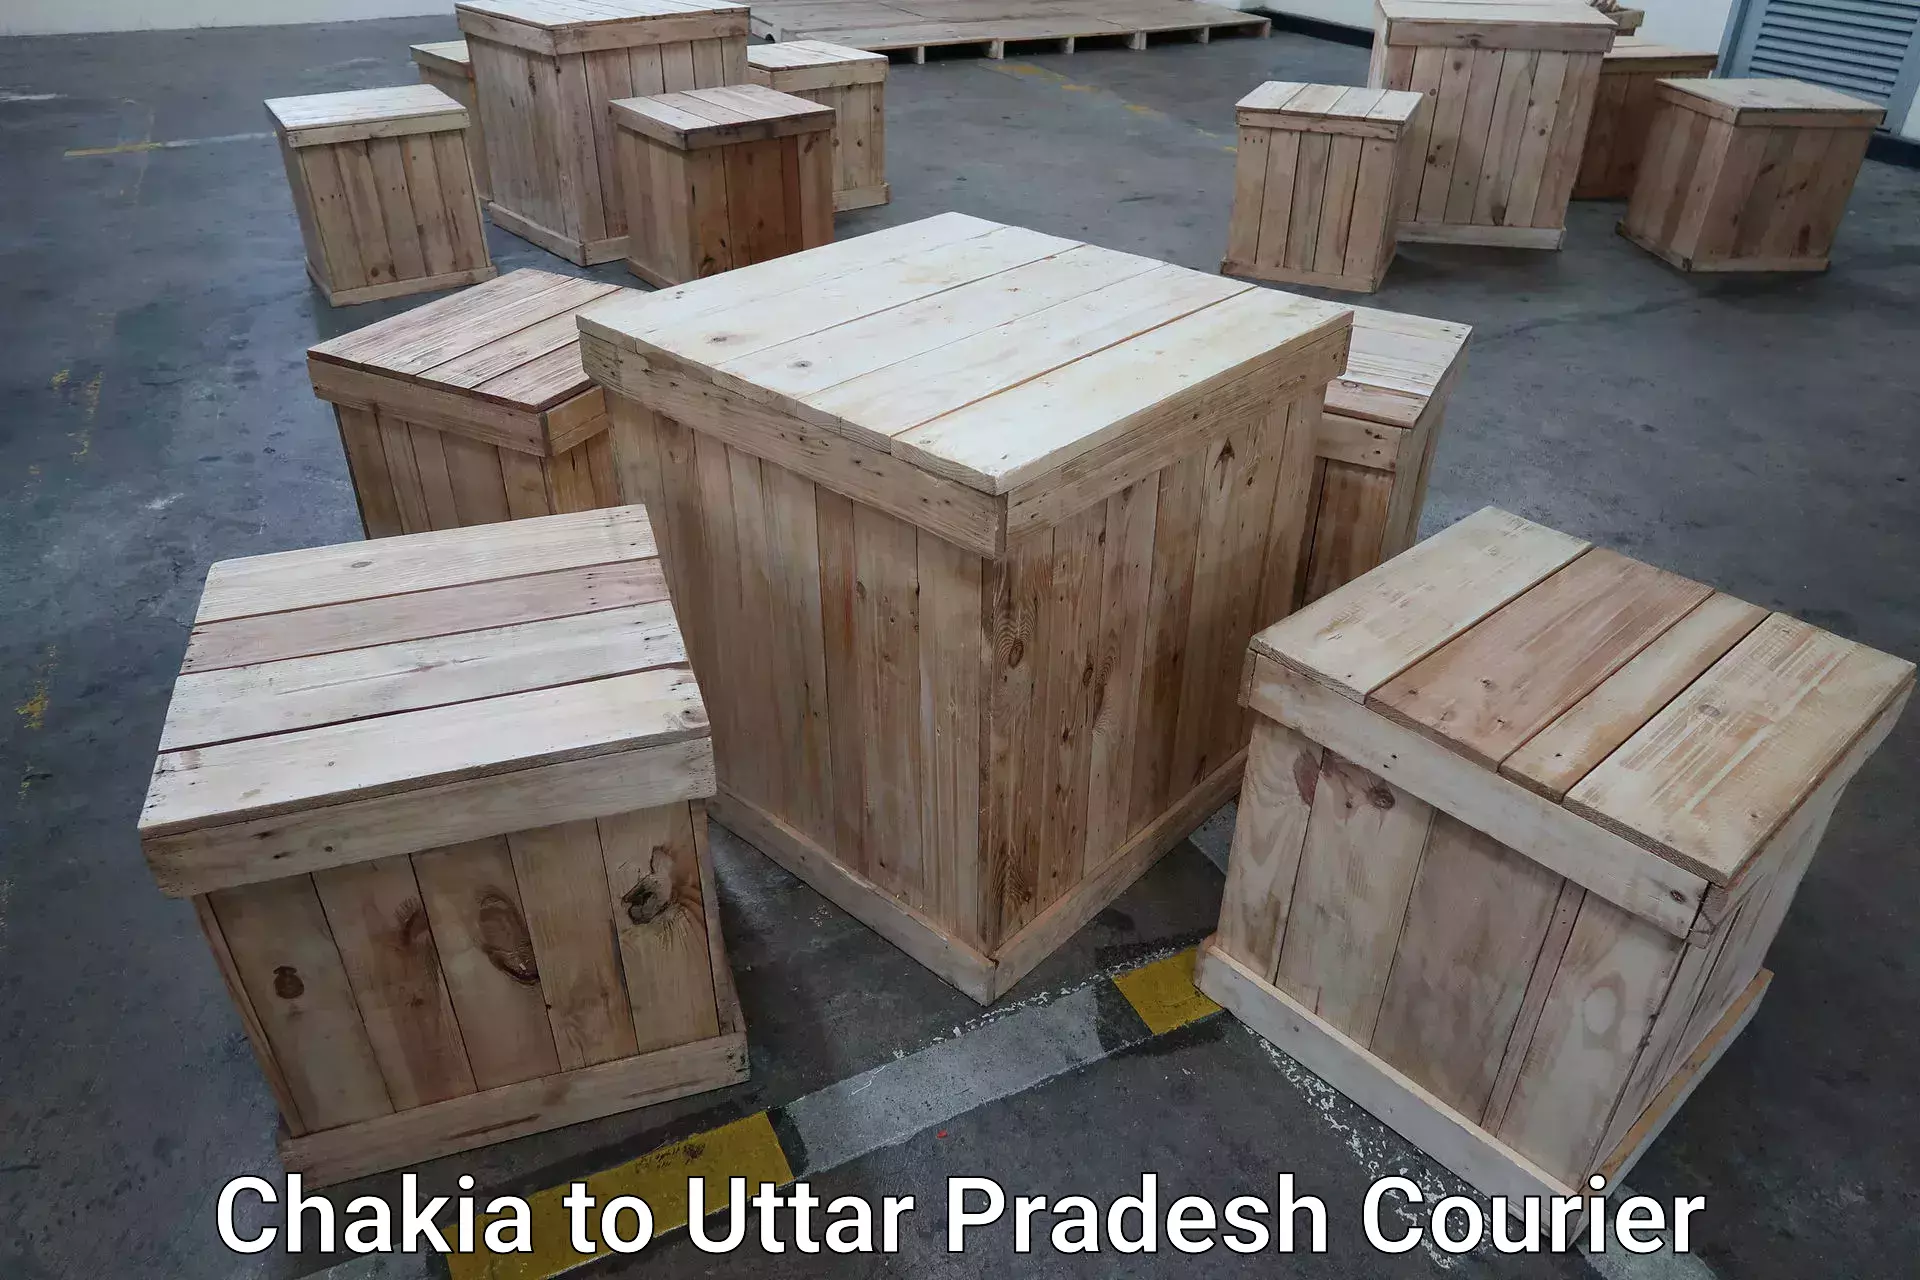 Luggage transfer service Chakia to Uttar Pradesh